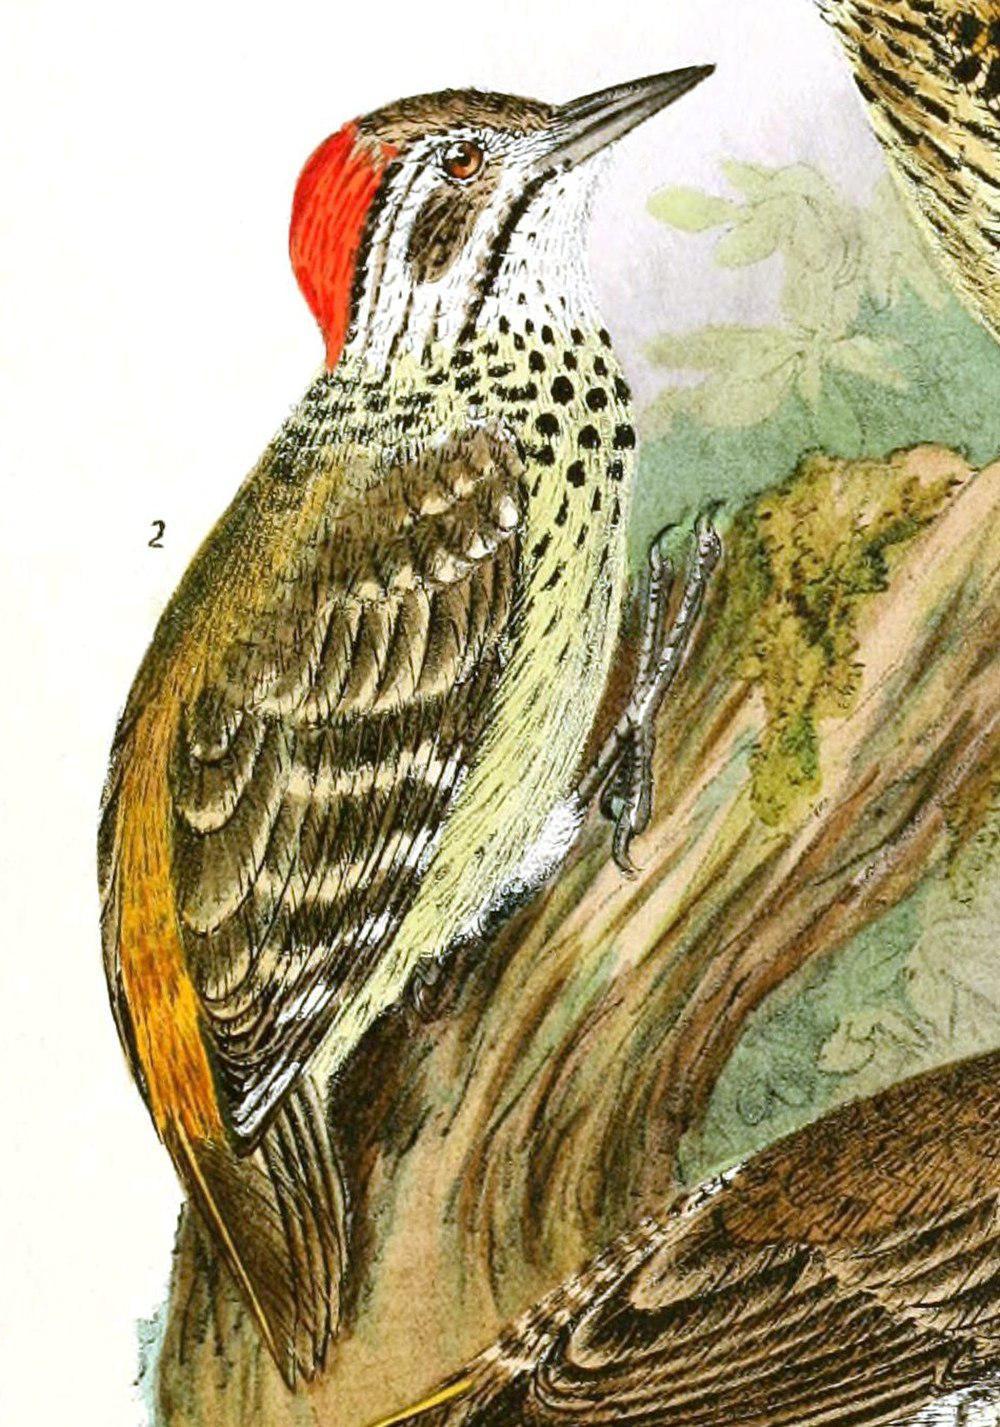 斑胸啄木鸟 / Speckle-breasted Woodpecker / Dendropicos poecilolaemus